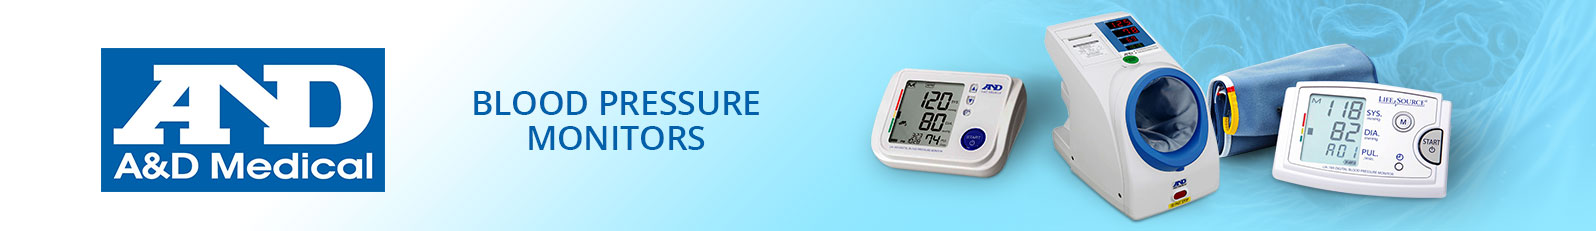 A&D Blood Pressure Monitors